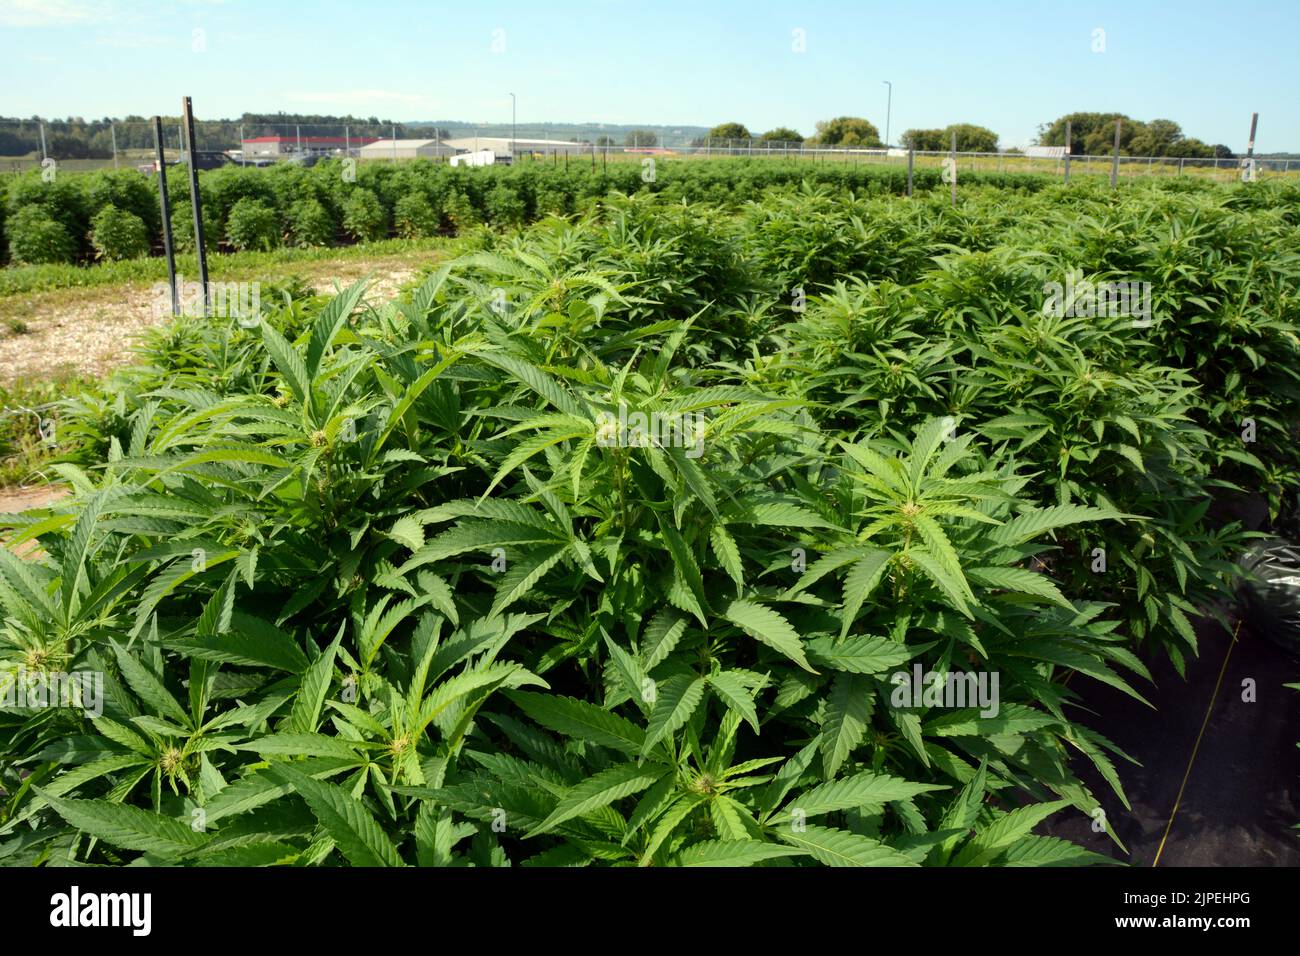 La marijuana ricreativa legale o le piante di cannabis sono cresciute all'aperto in una fattoria sostenibile vicino alla città di Creemore, Ontario, Canada. Foto Stock